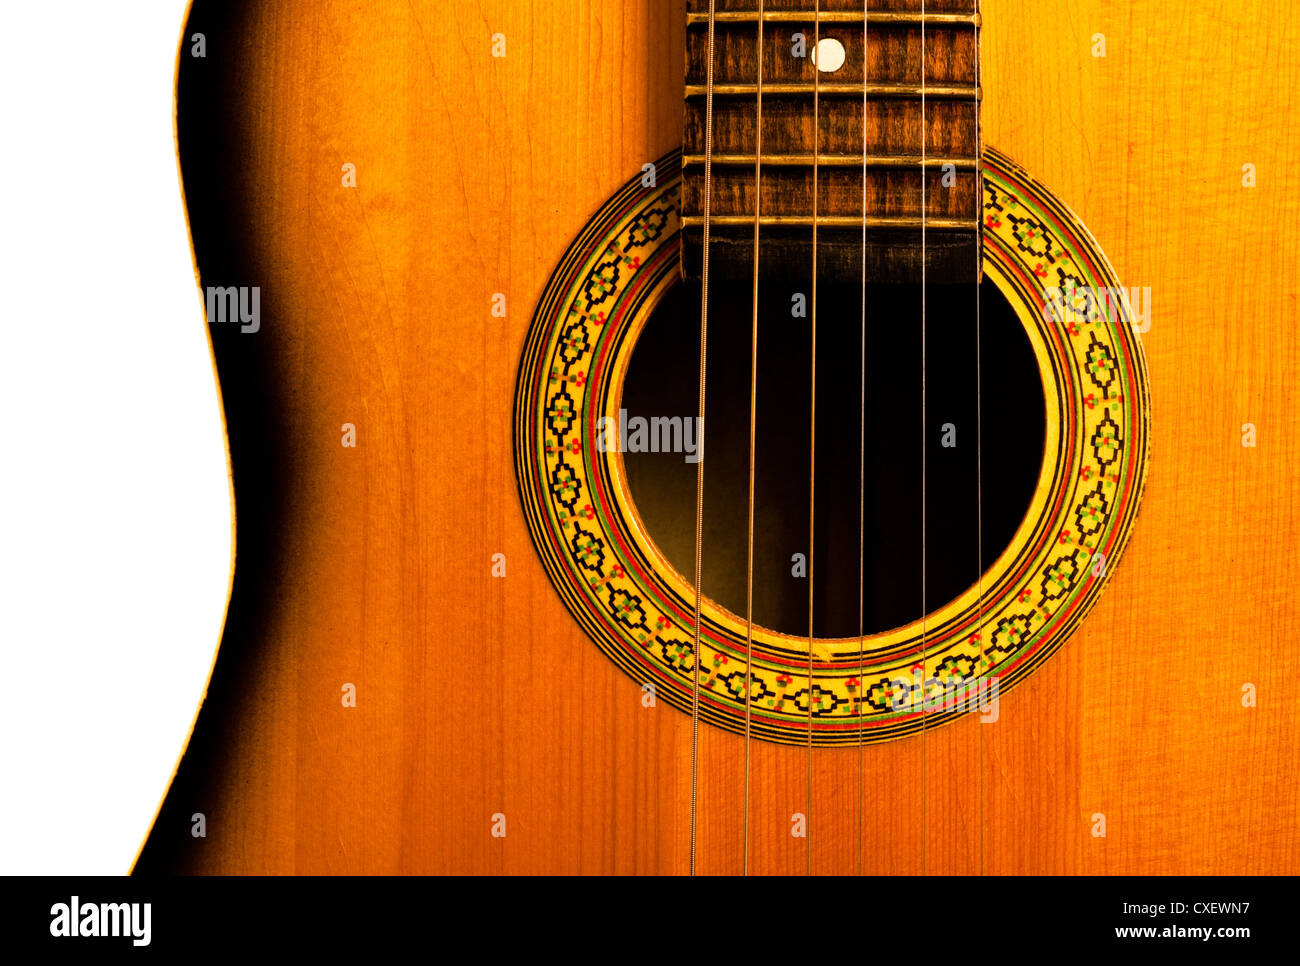 La partie centrale de la guitare acoustique Photo Stock - Alamy